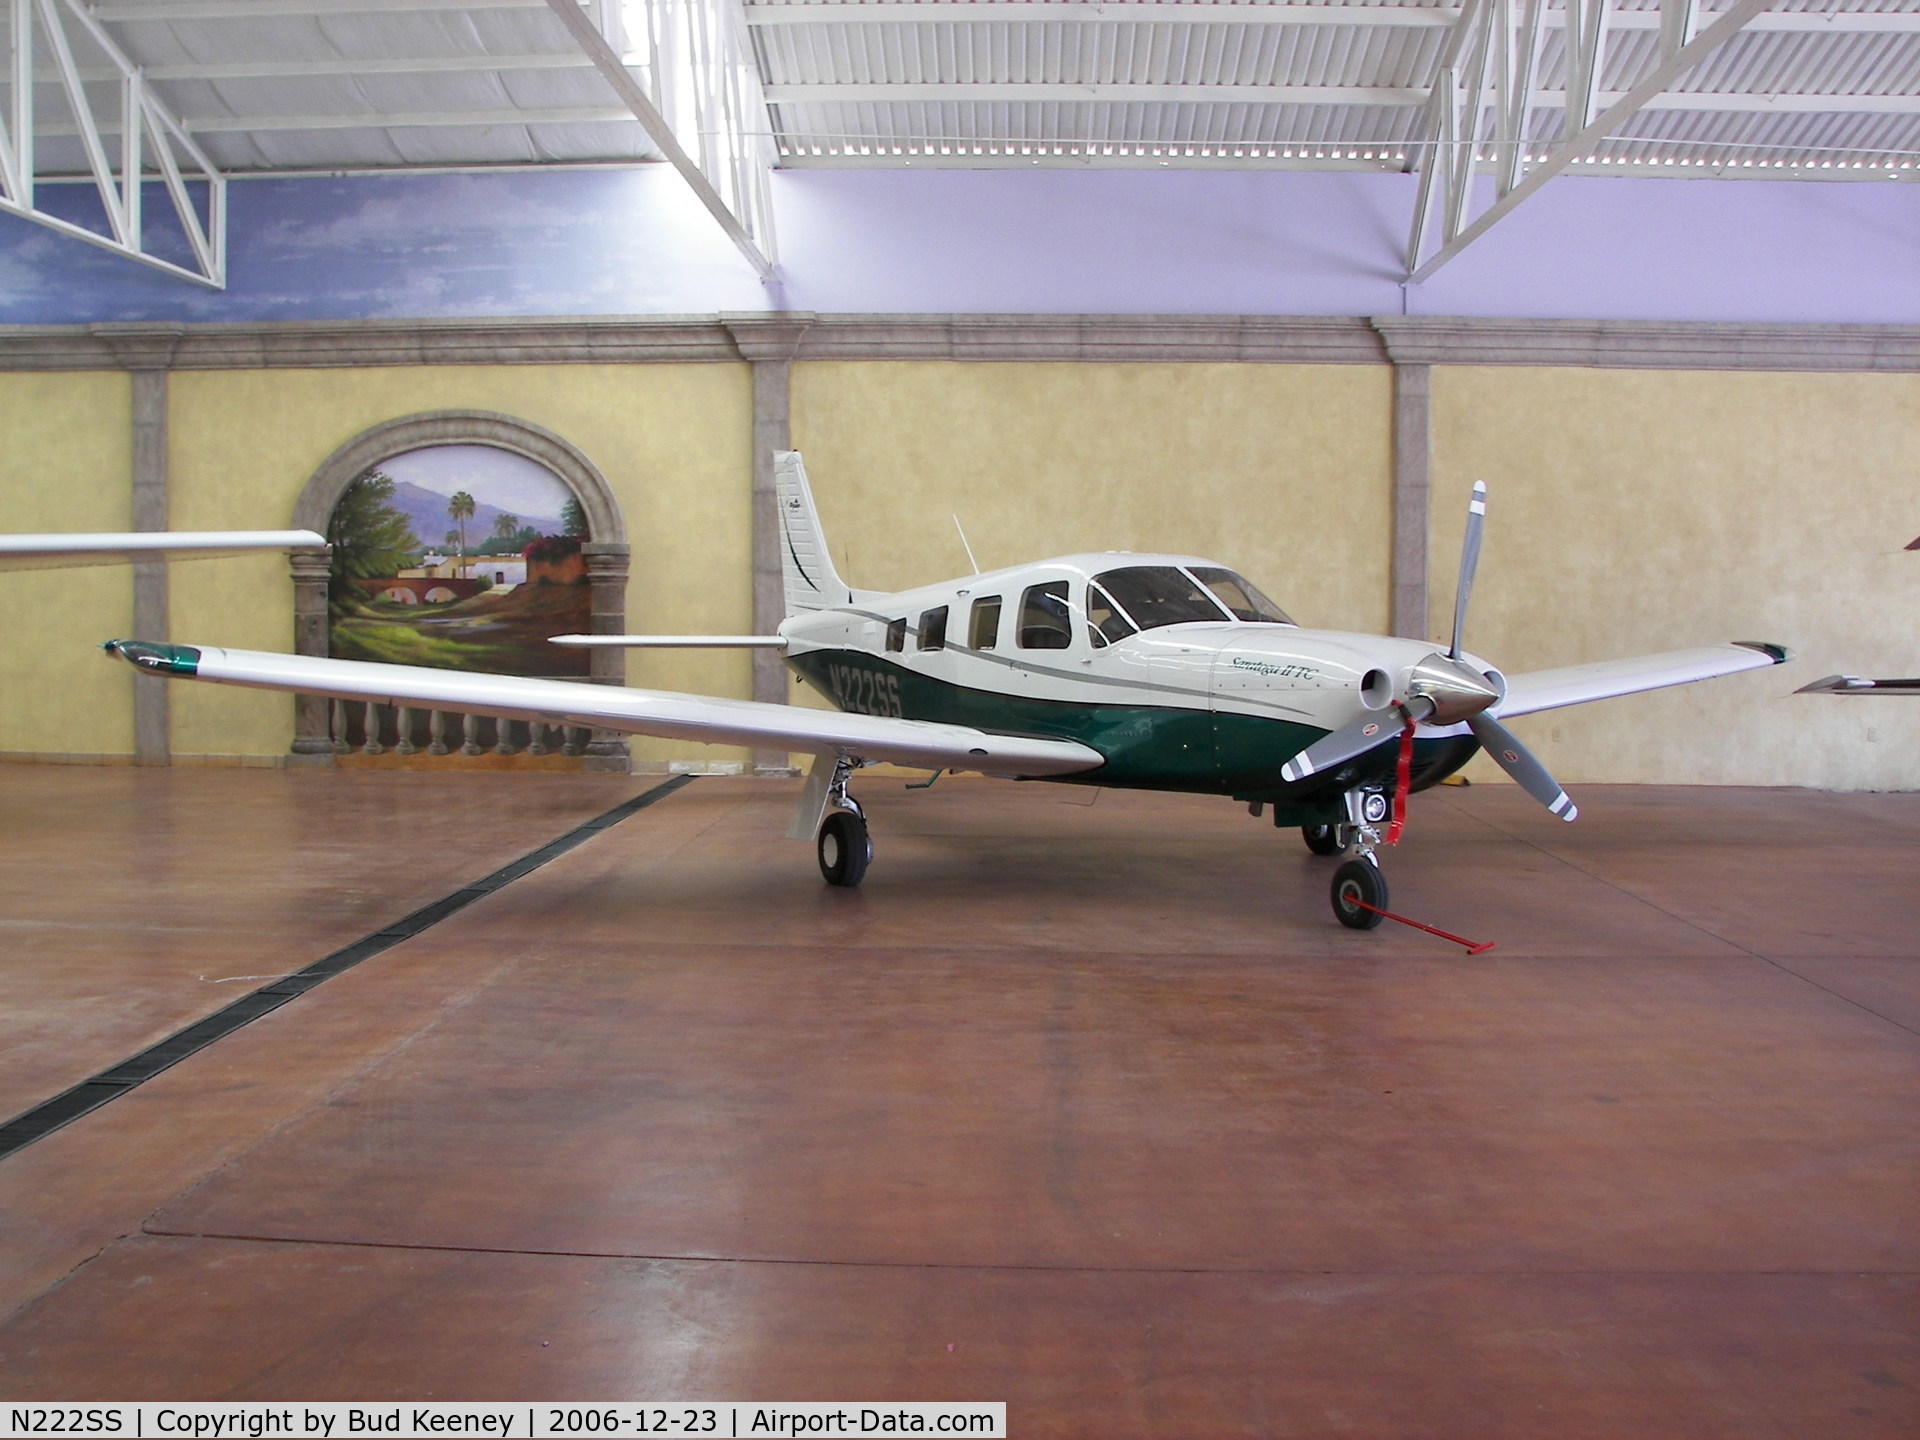 N222SS, 2001 Piper PA-32R-301T Turbo Saratoga C/N 3257260, Alamos Mexico